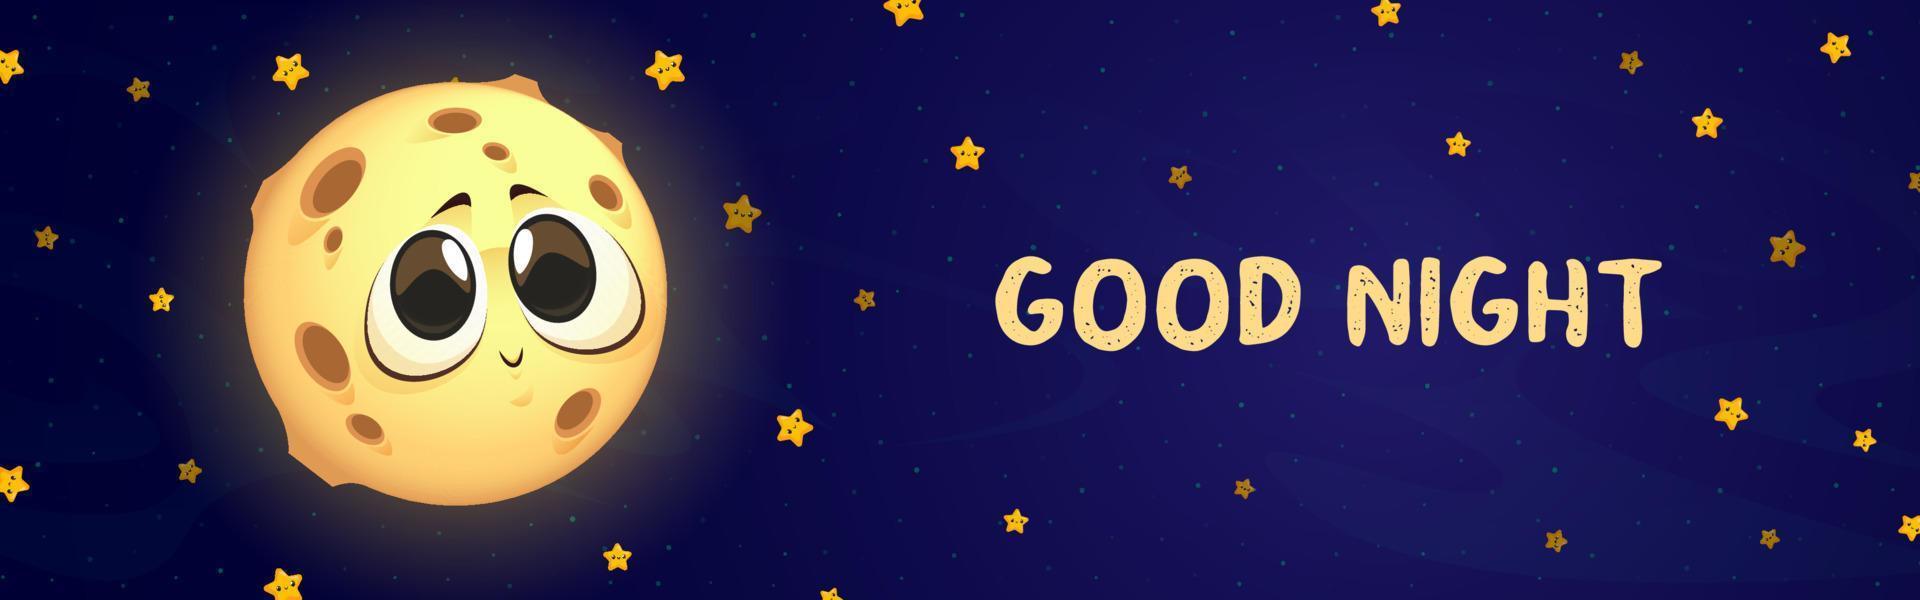 banner de dibujos animados de buenas noches con linda luna y estrellas vector